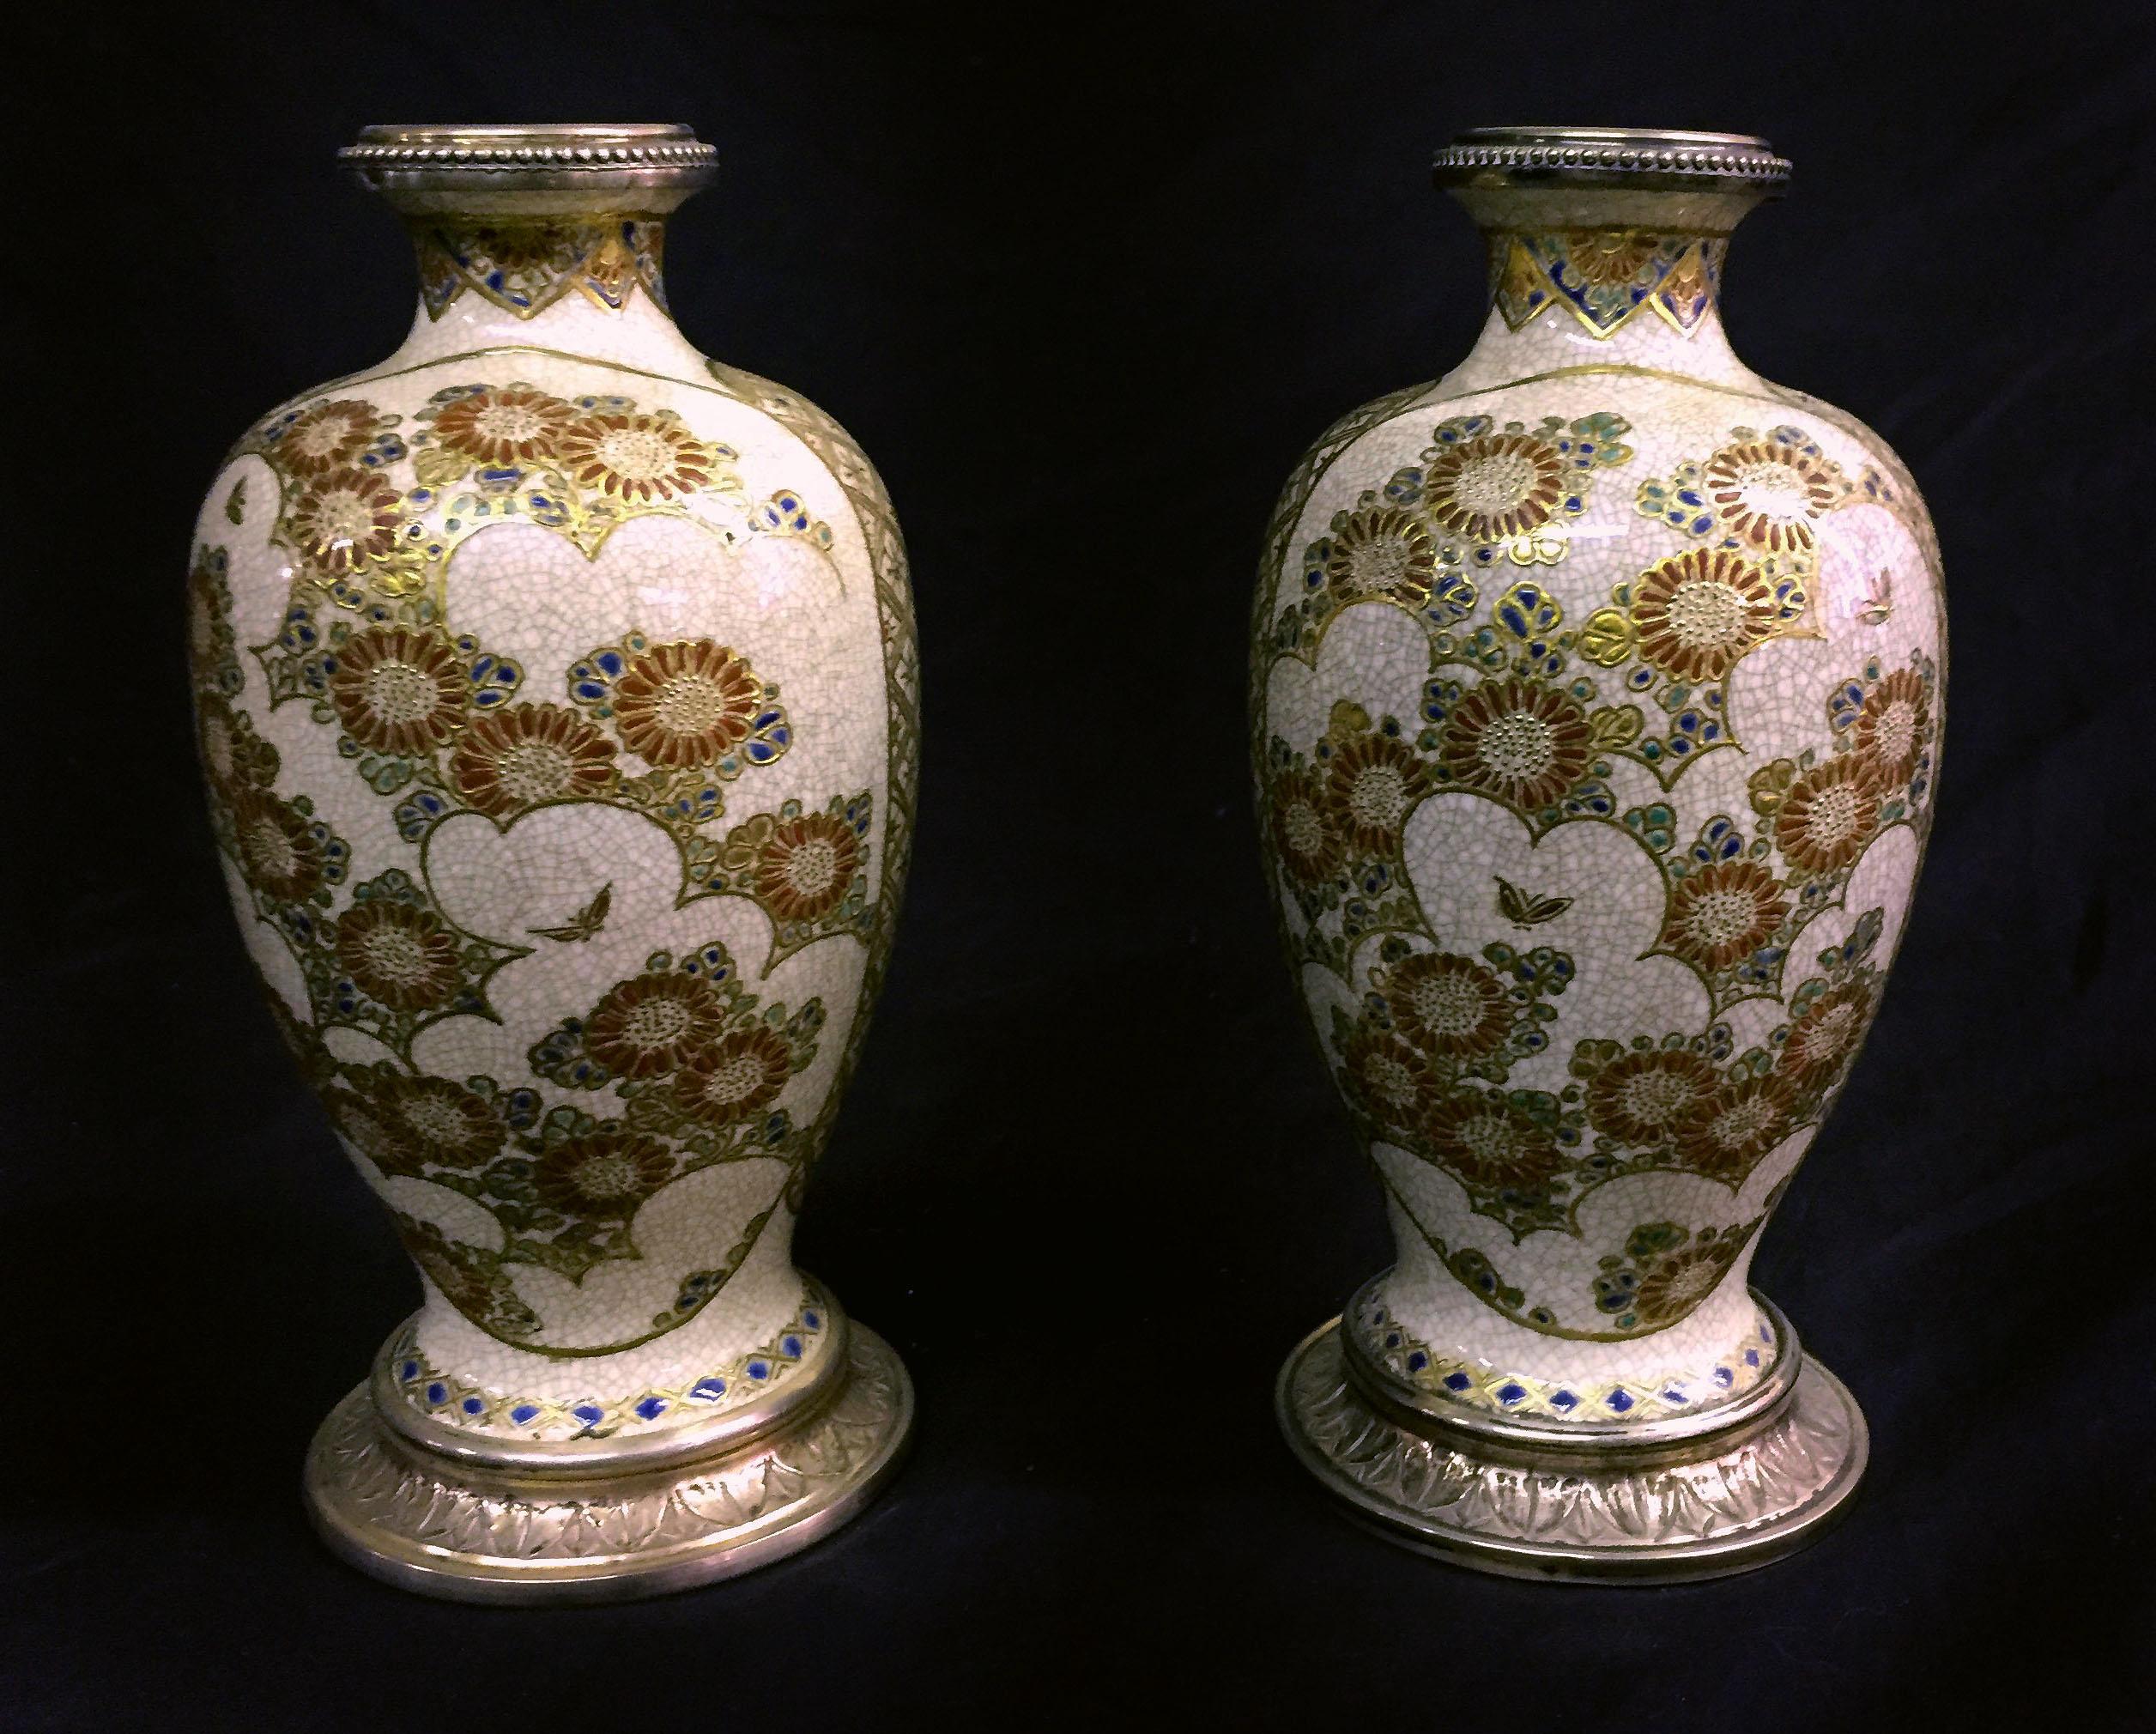 Belle paire de vases en porcelaine de Satsuma japonais montés sur argent à la fin du 19e siècle

Les panneaux avant sont peints de figures de type lion, les panneaux arrière de fleurs et de papillons, l'ensemble du vase est orné de motifs dorés en